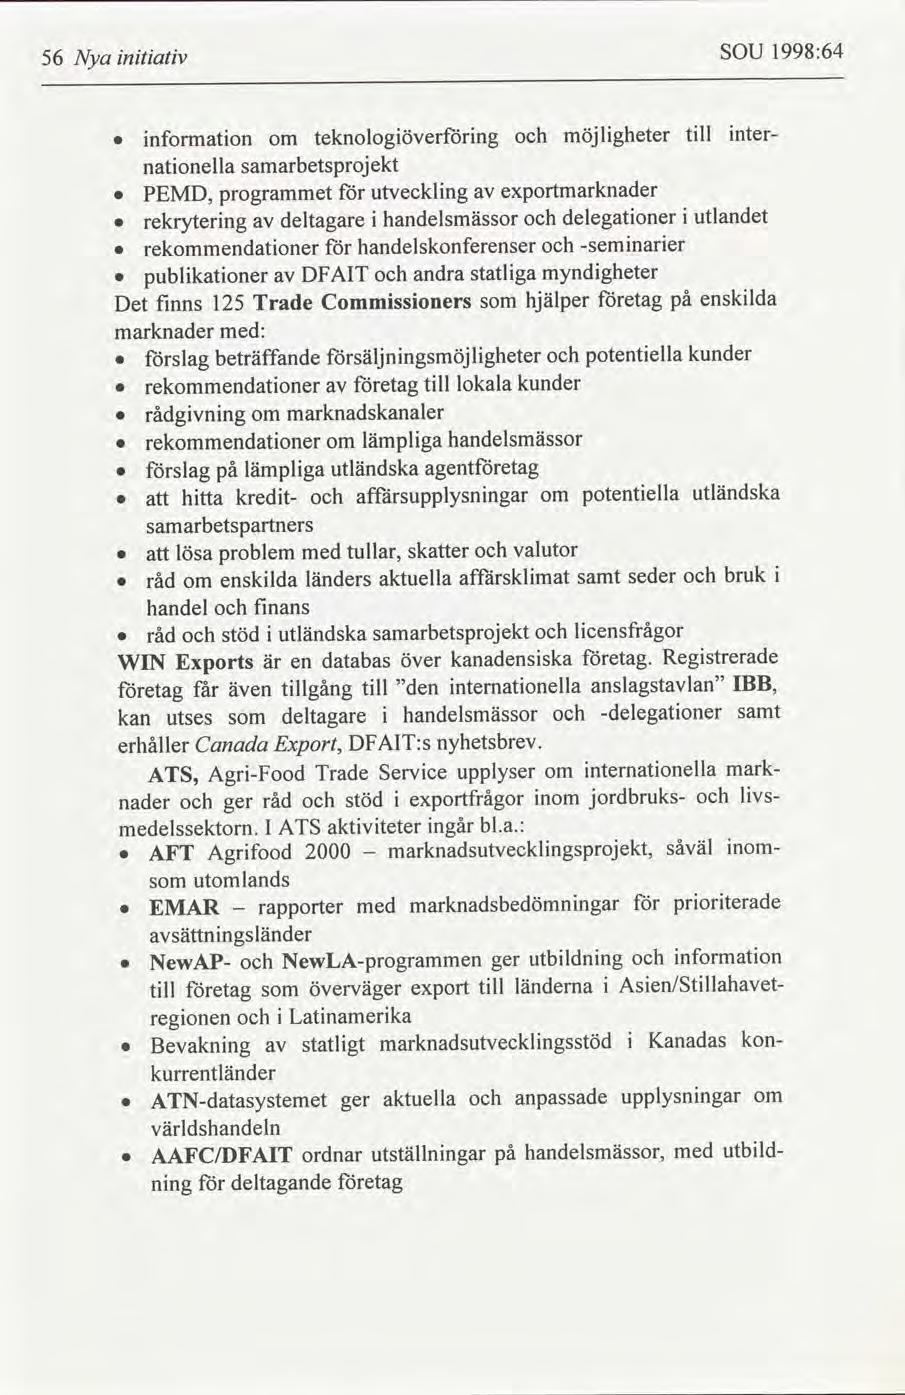 1998:64 SOU 56 Nya ntatv ntertll möjlgheter teknologöverforng nformaton om samarbetsprojekt natonella exportmarknader utvecklng PEMD, programmet utlandet delegatoner handelsmässor deltagare